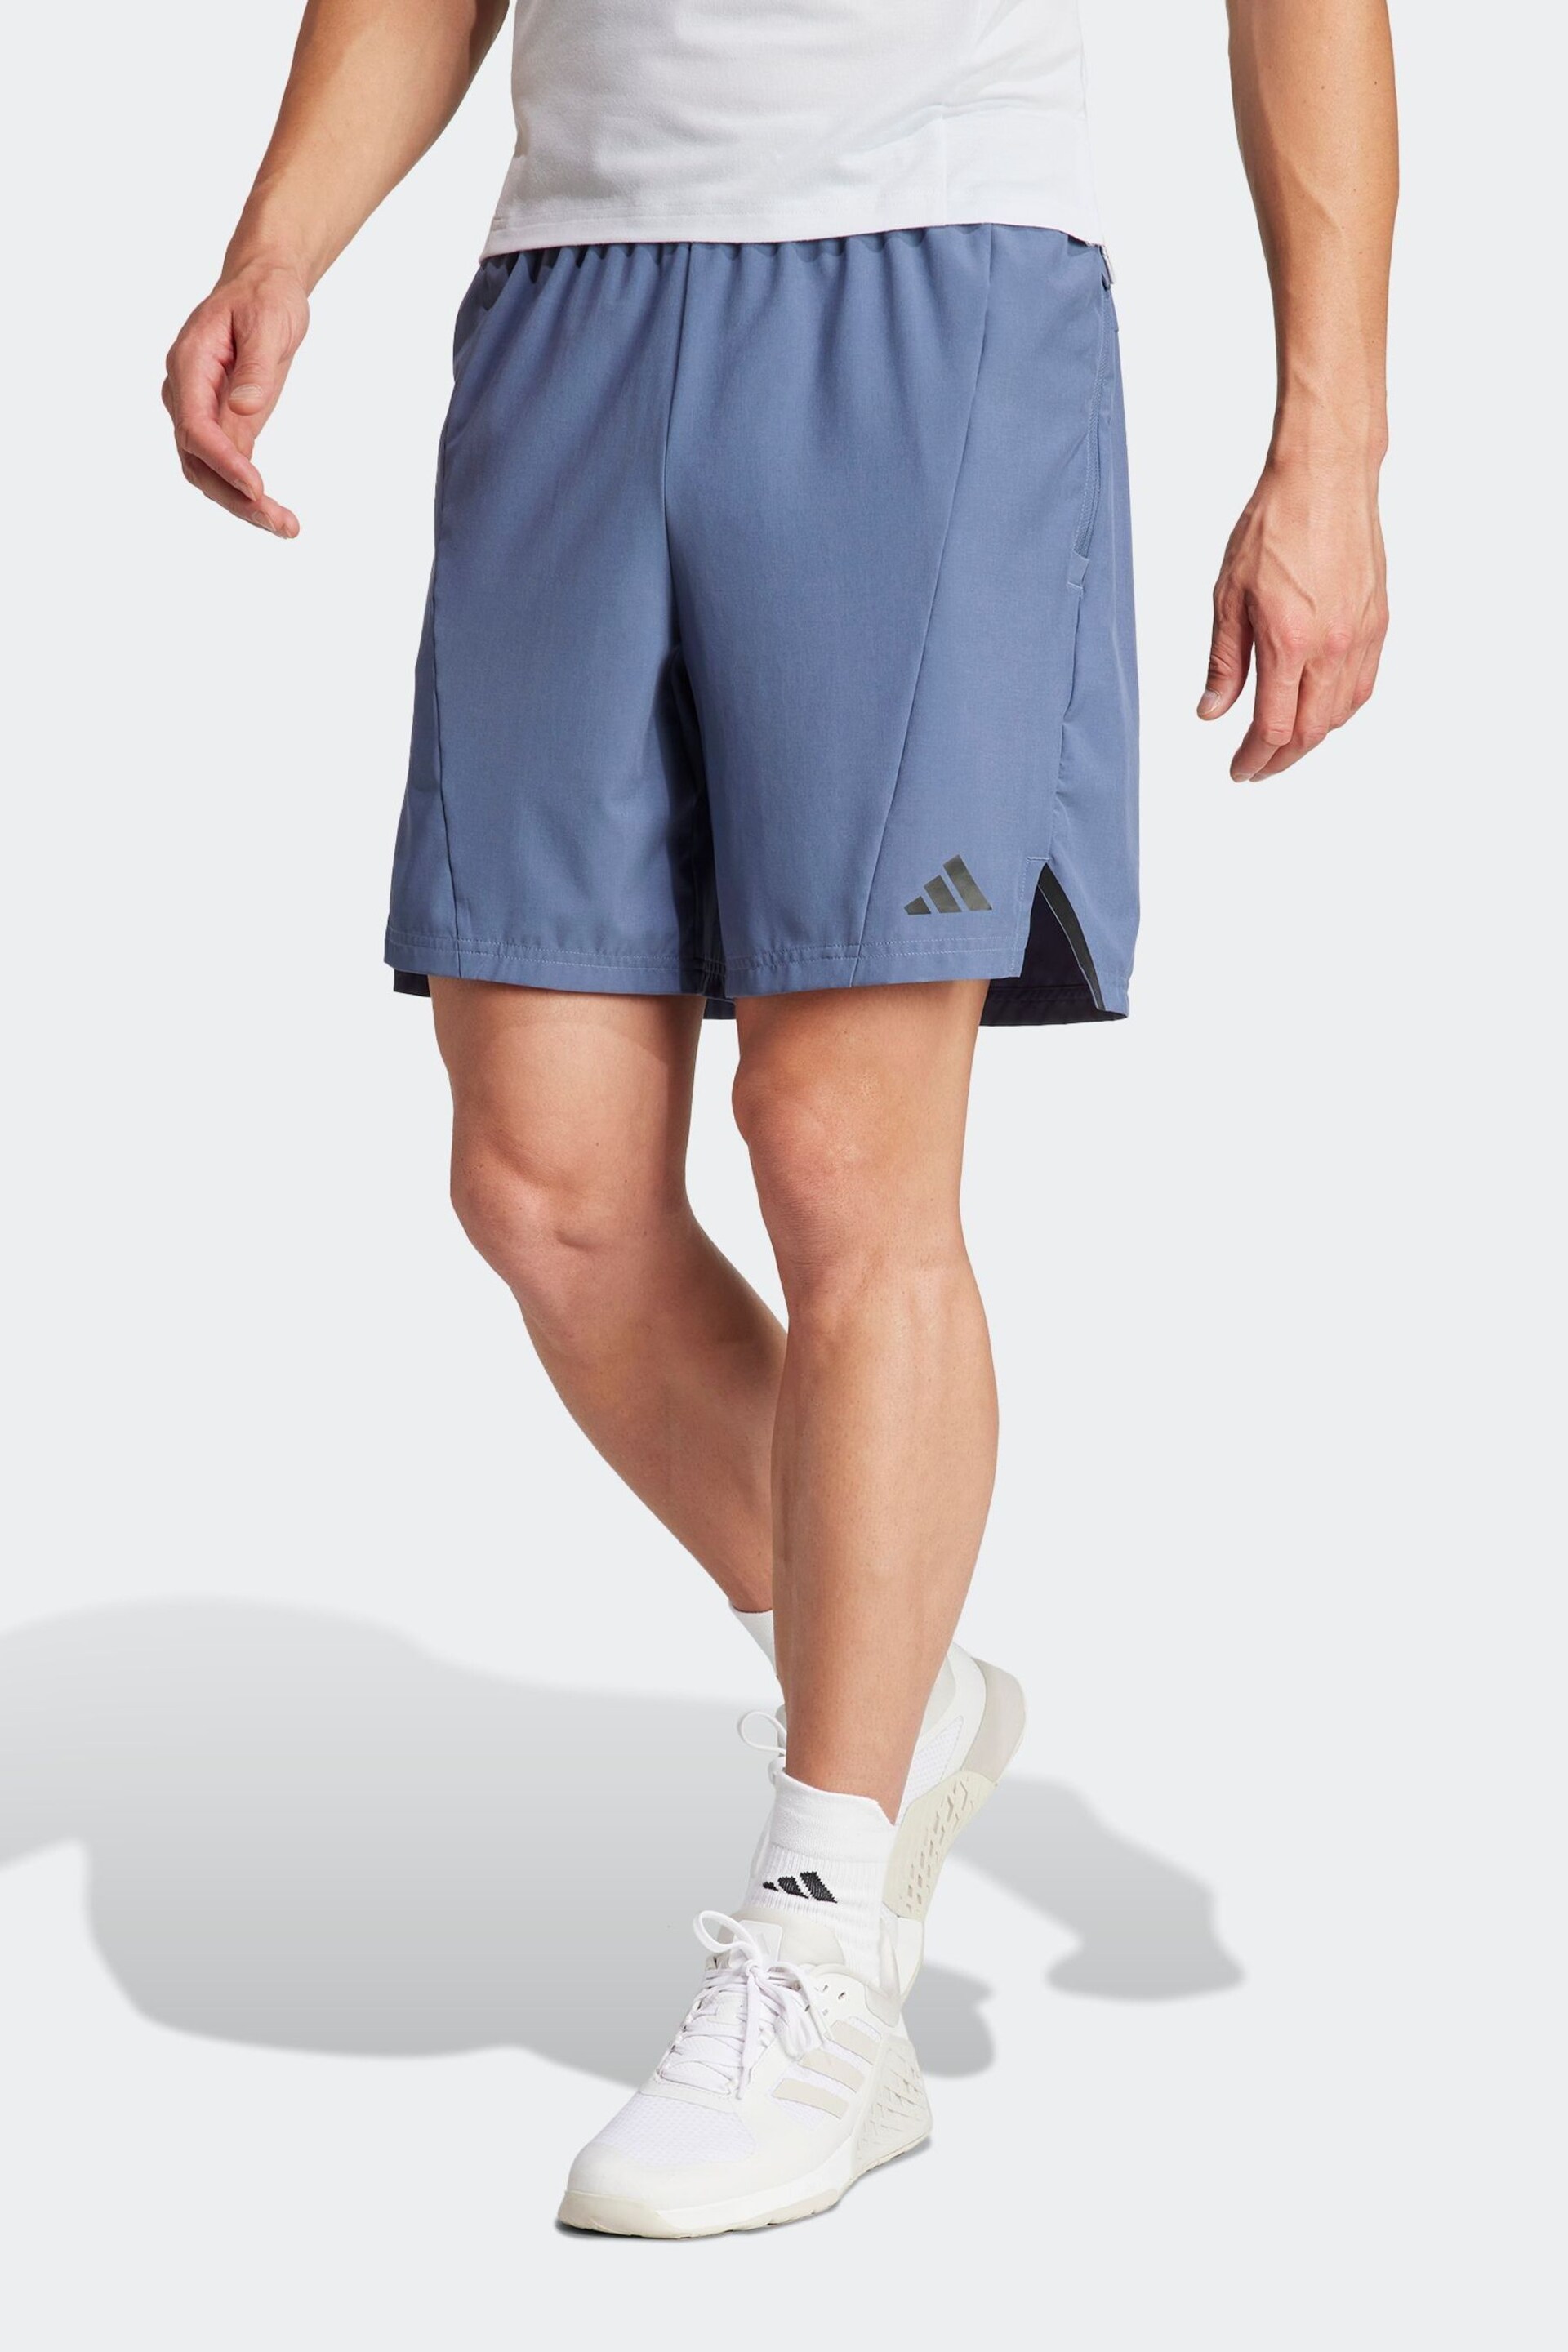 adidas Blue Designed for Training Workout Shorts - Image 1 of 1